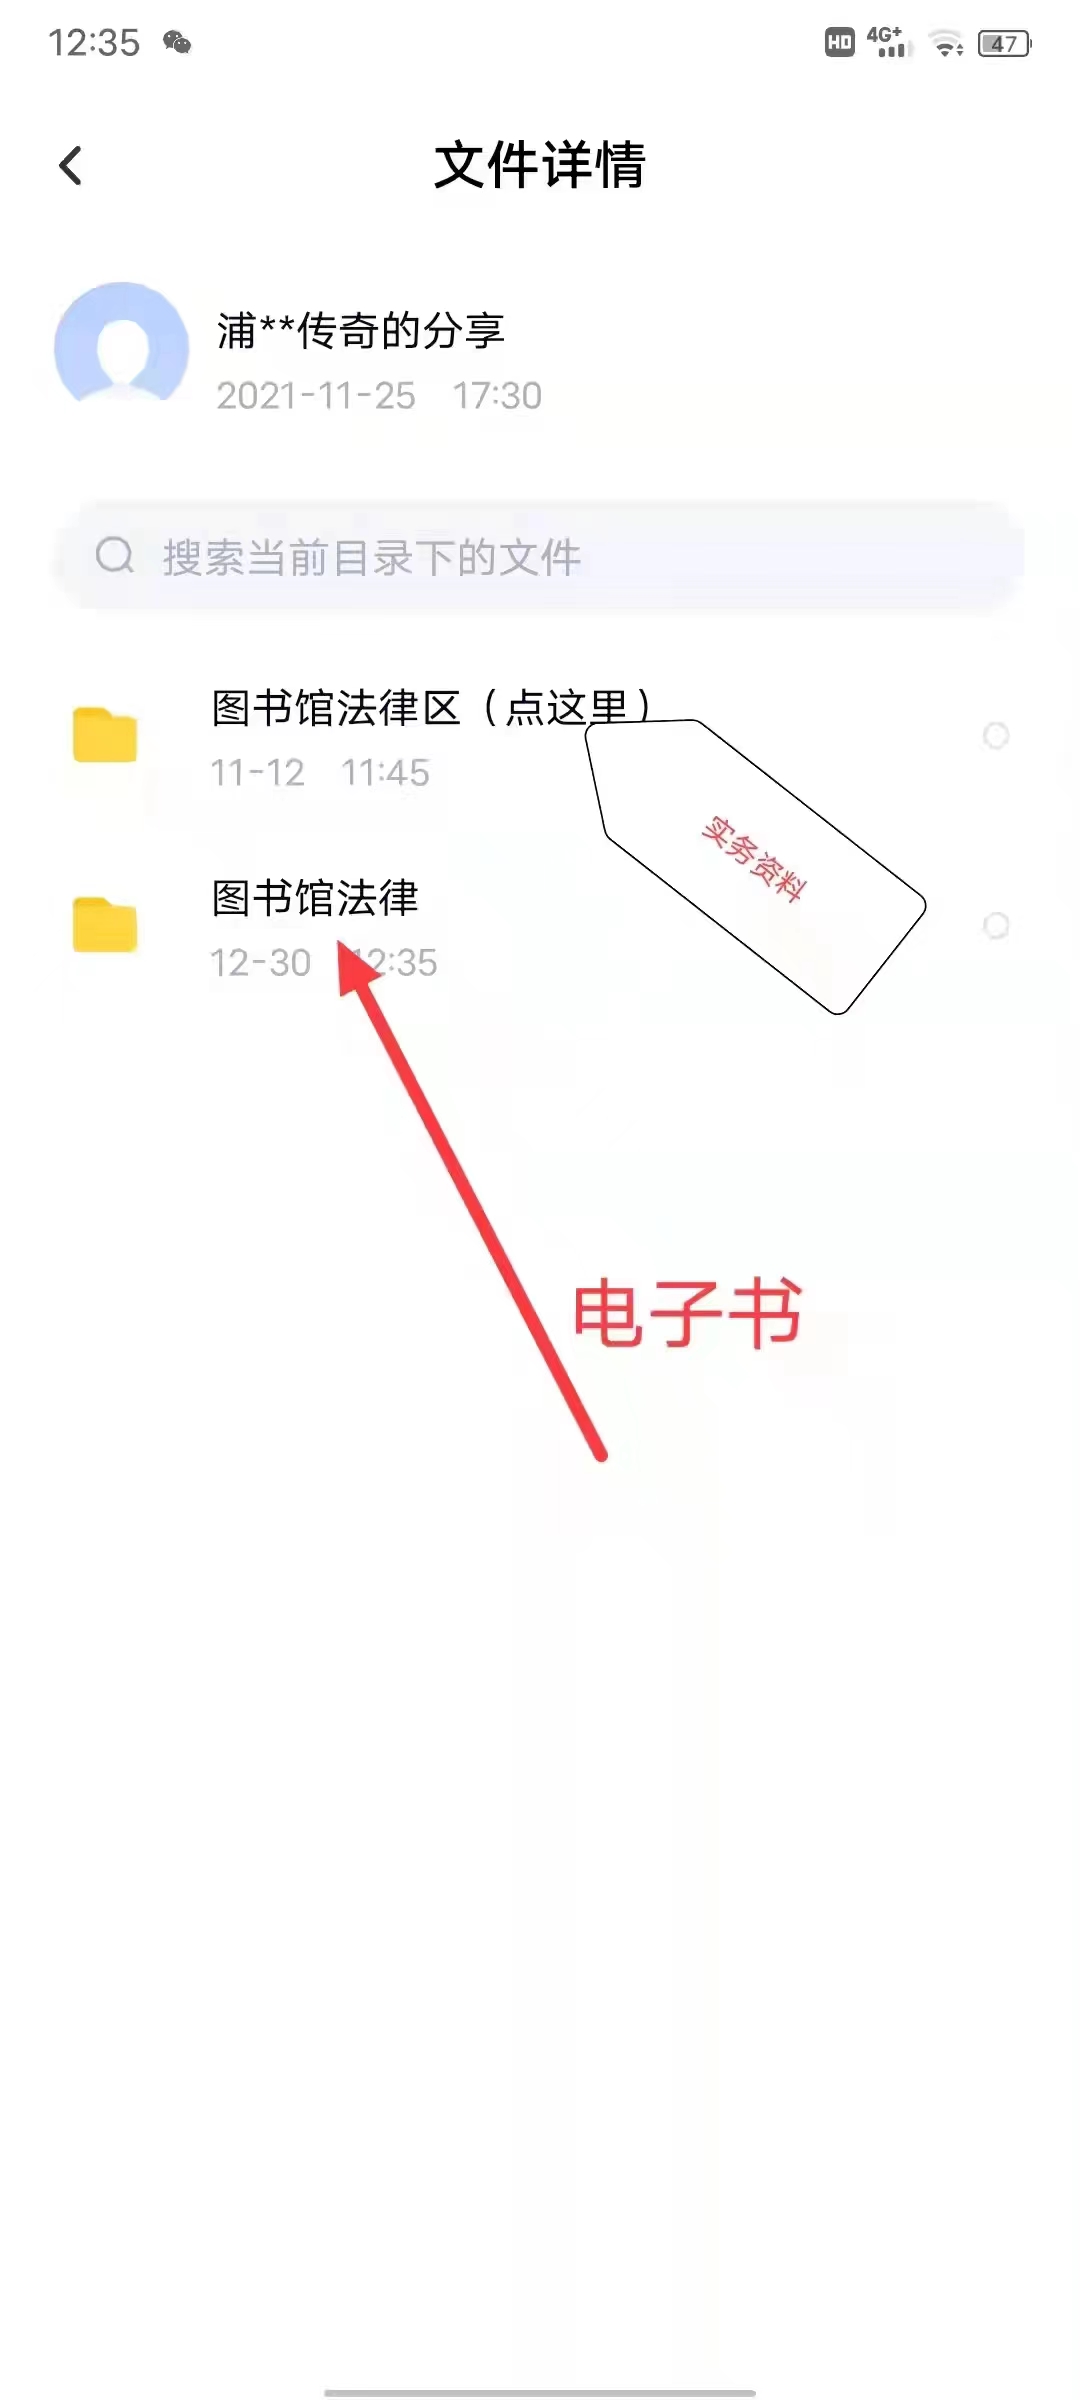 【法律】【PDF】019 律师笔记律政生涯法案写真 202203 张洪